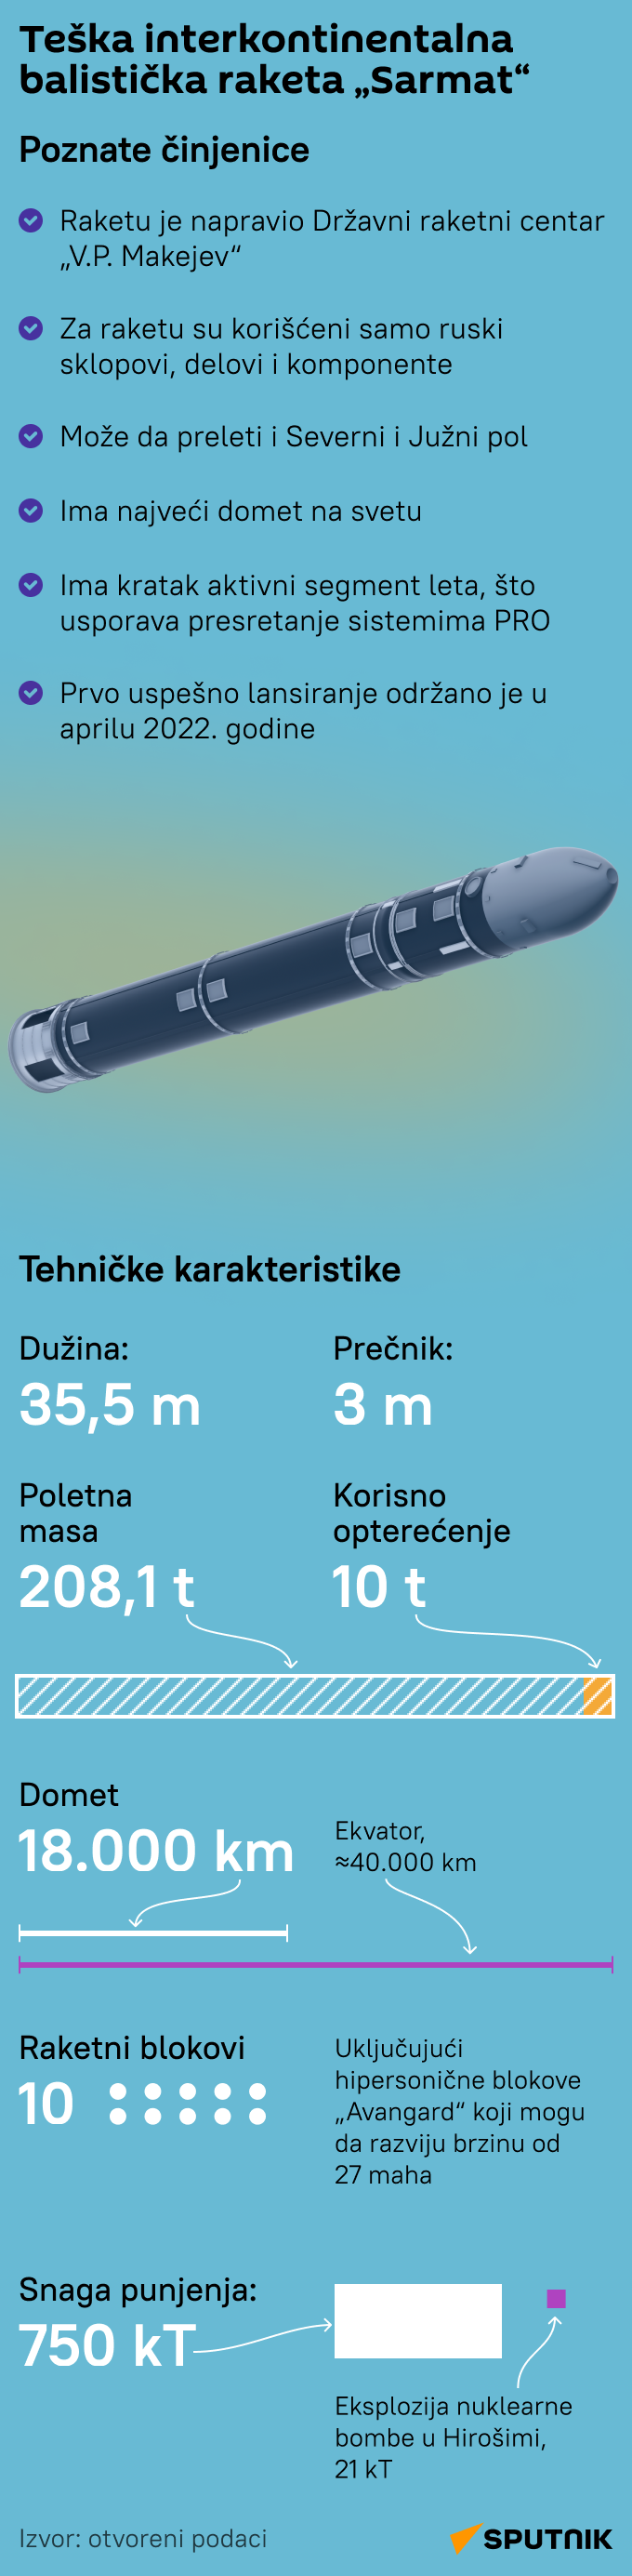 Infografika Teška raketa Sarmat LATINICA mob - Sputnik Srbija